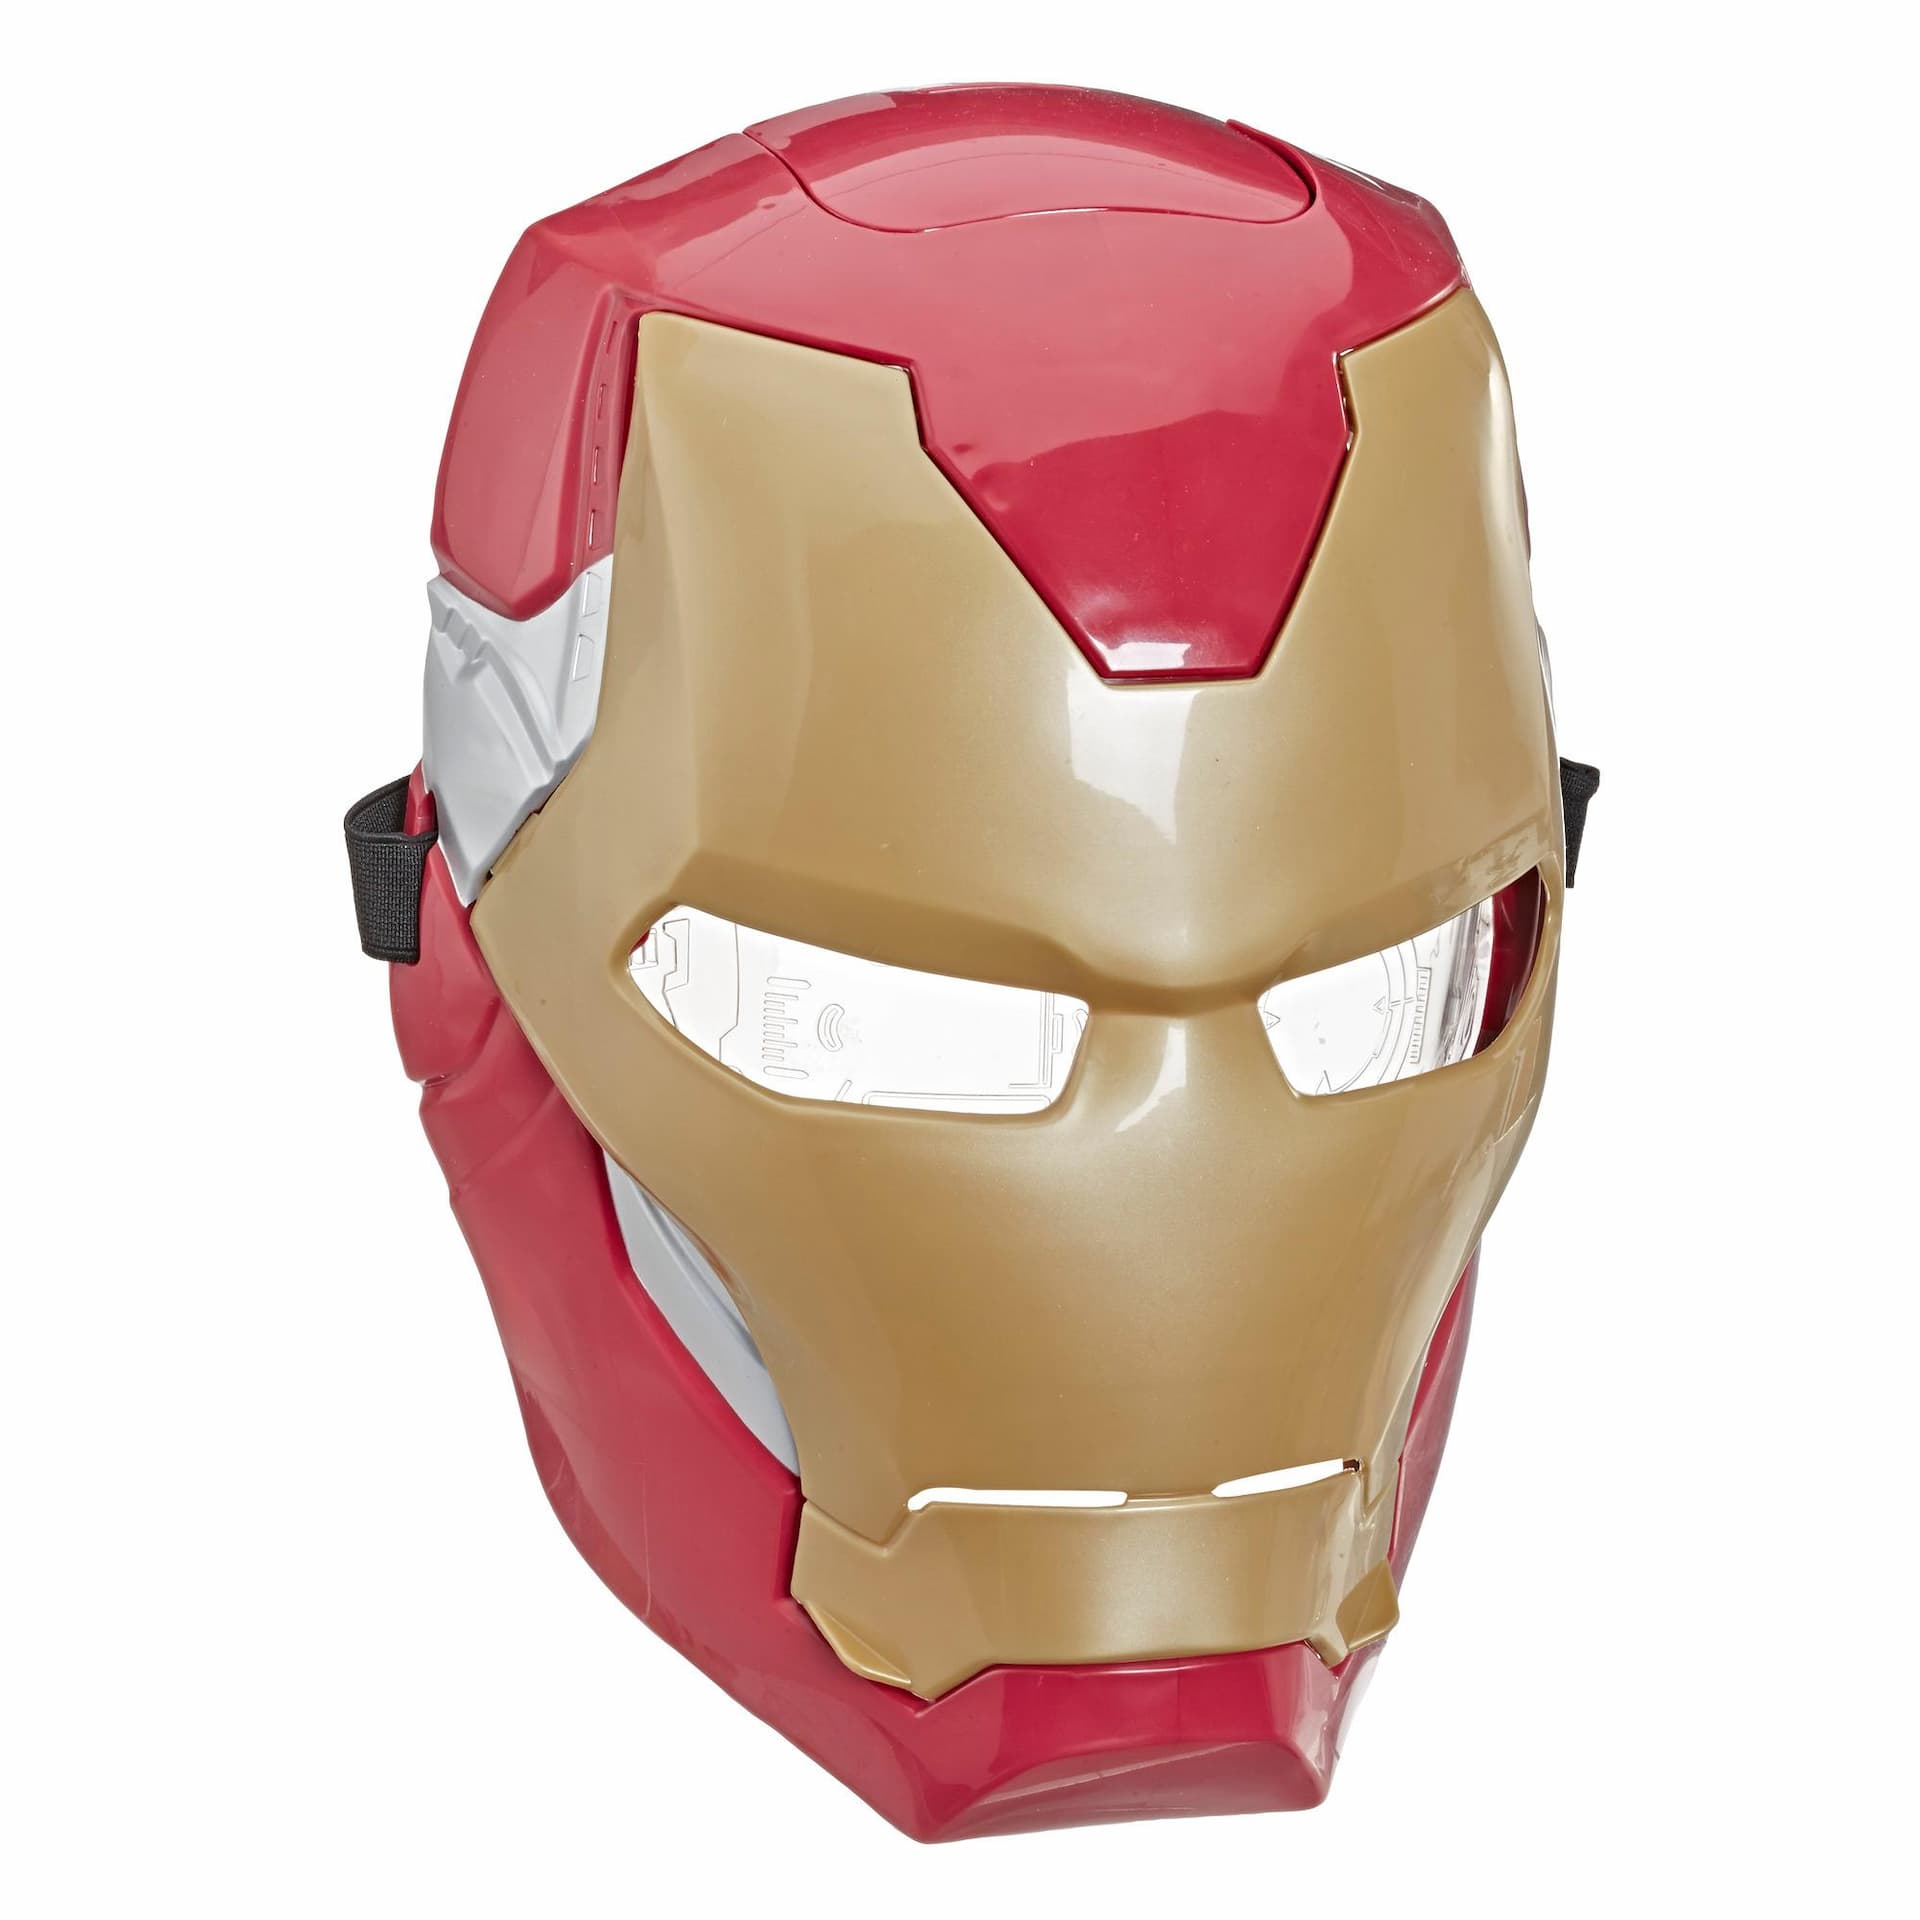 Marvel Avengers Iron Man elektronische Maske mit Lichteffekten für Kostüme und Rollenspiele